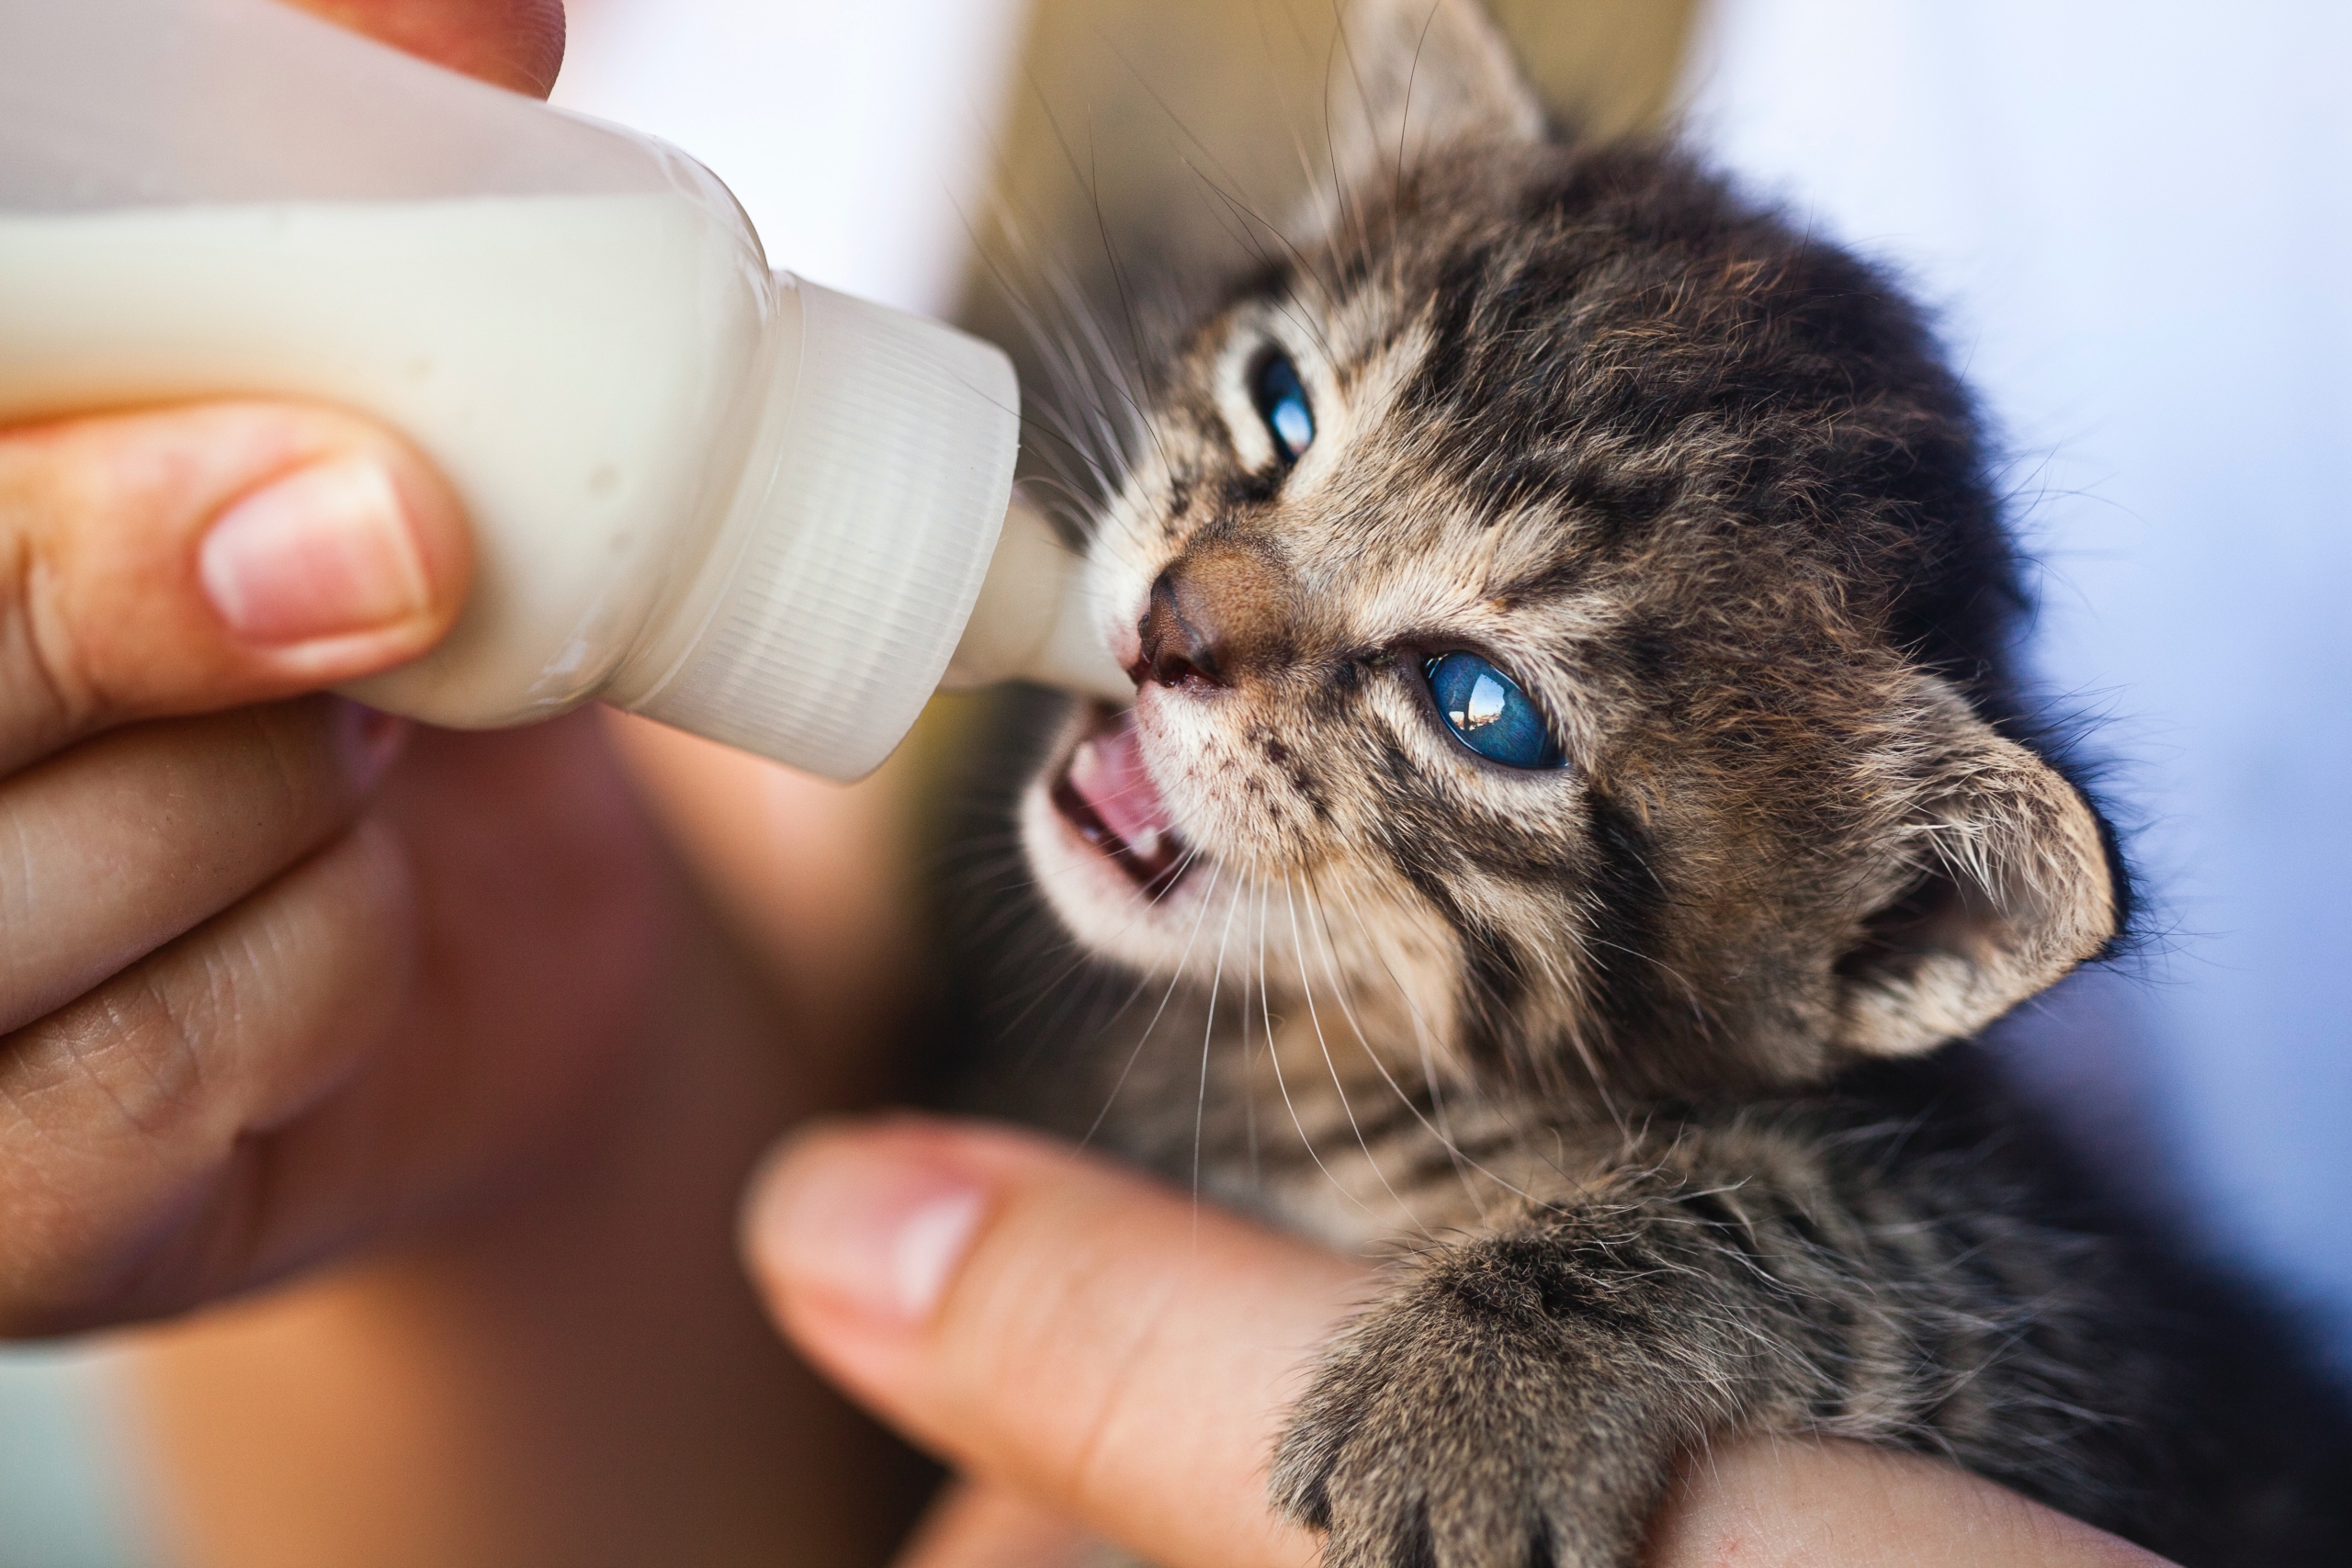 5 Steps to Bottle Feeding a Kitten